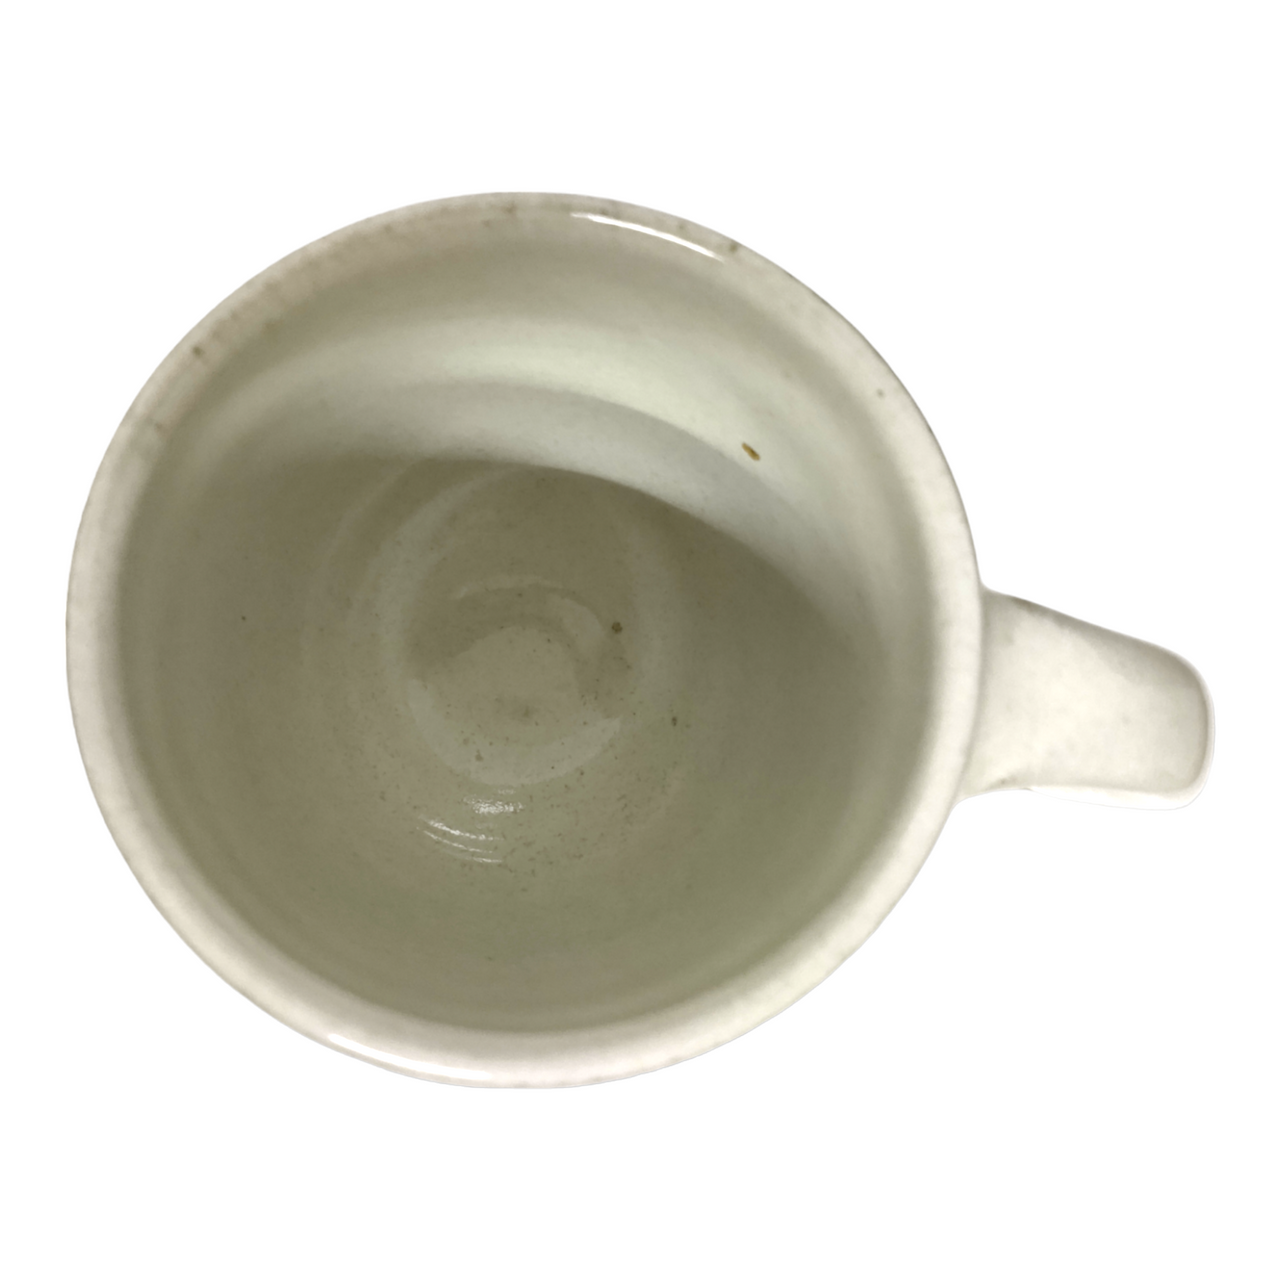 Brown and White Coffee Mug